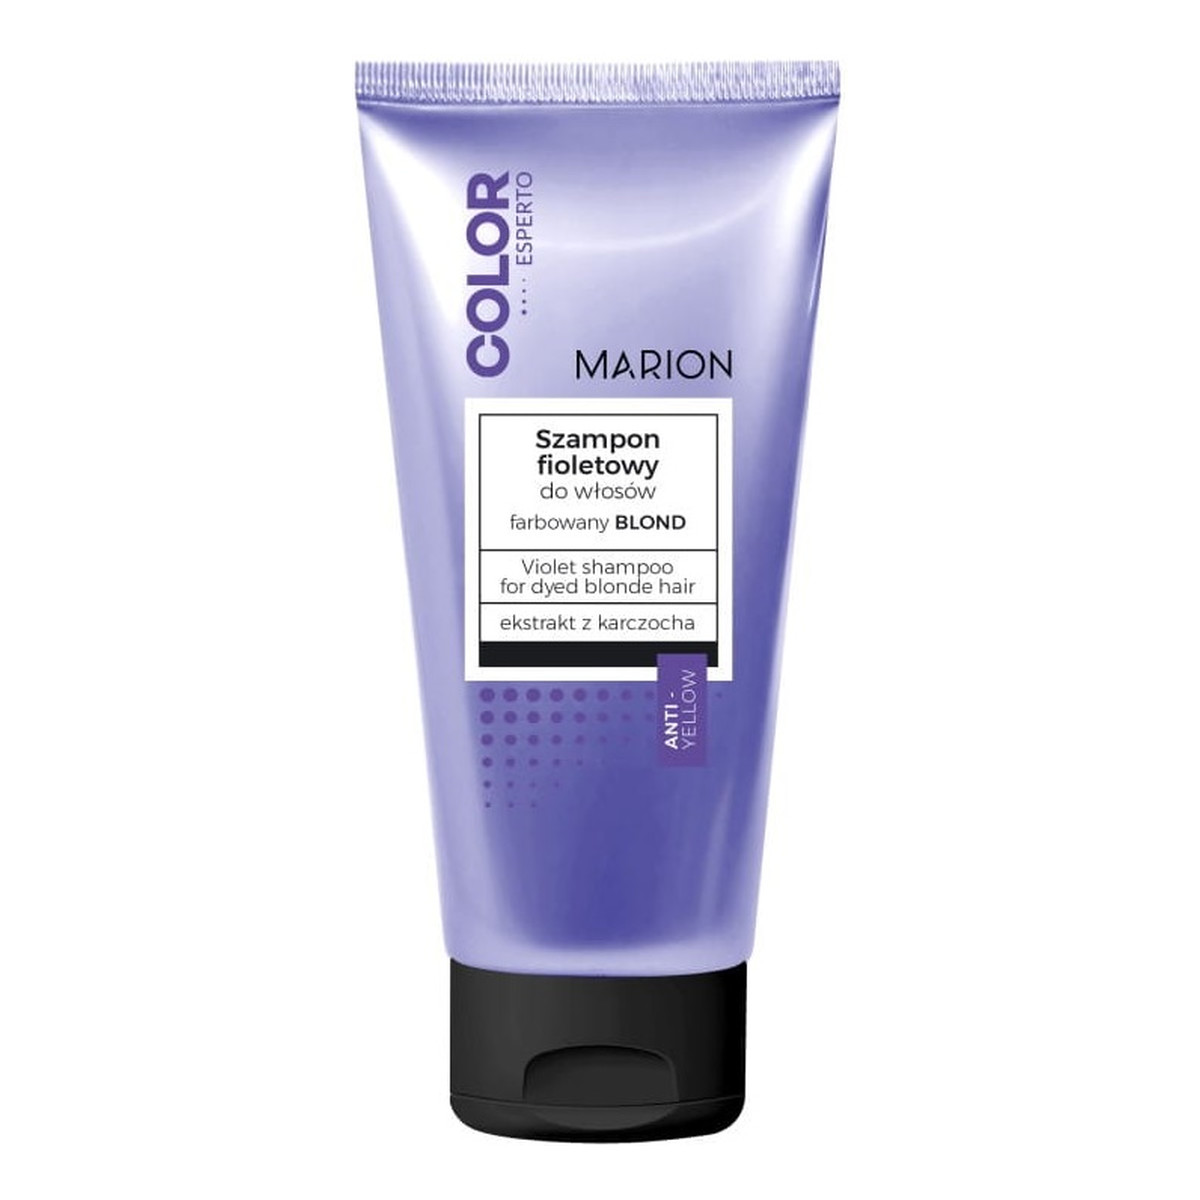 Marion Color esperto szampon fioletowy do włosów farbowanych na blond 200ml